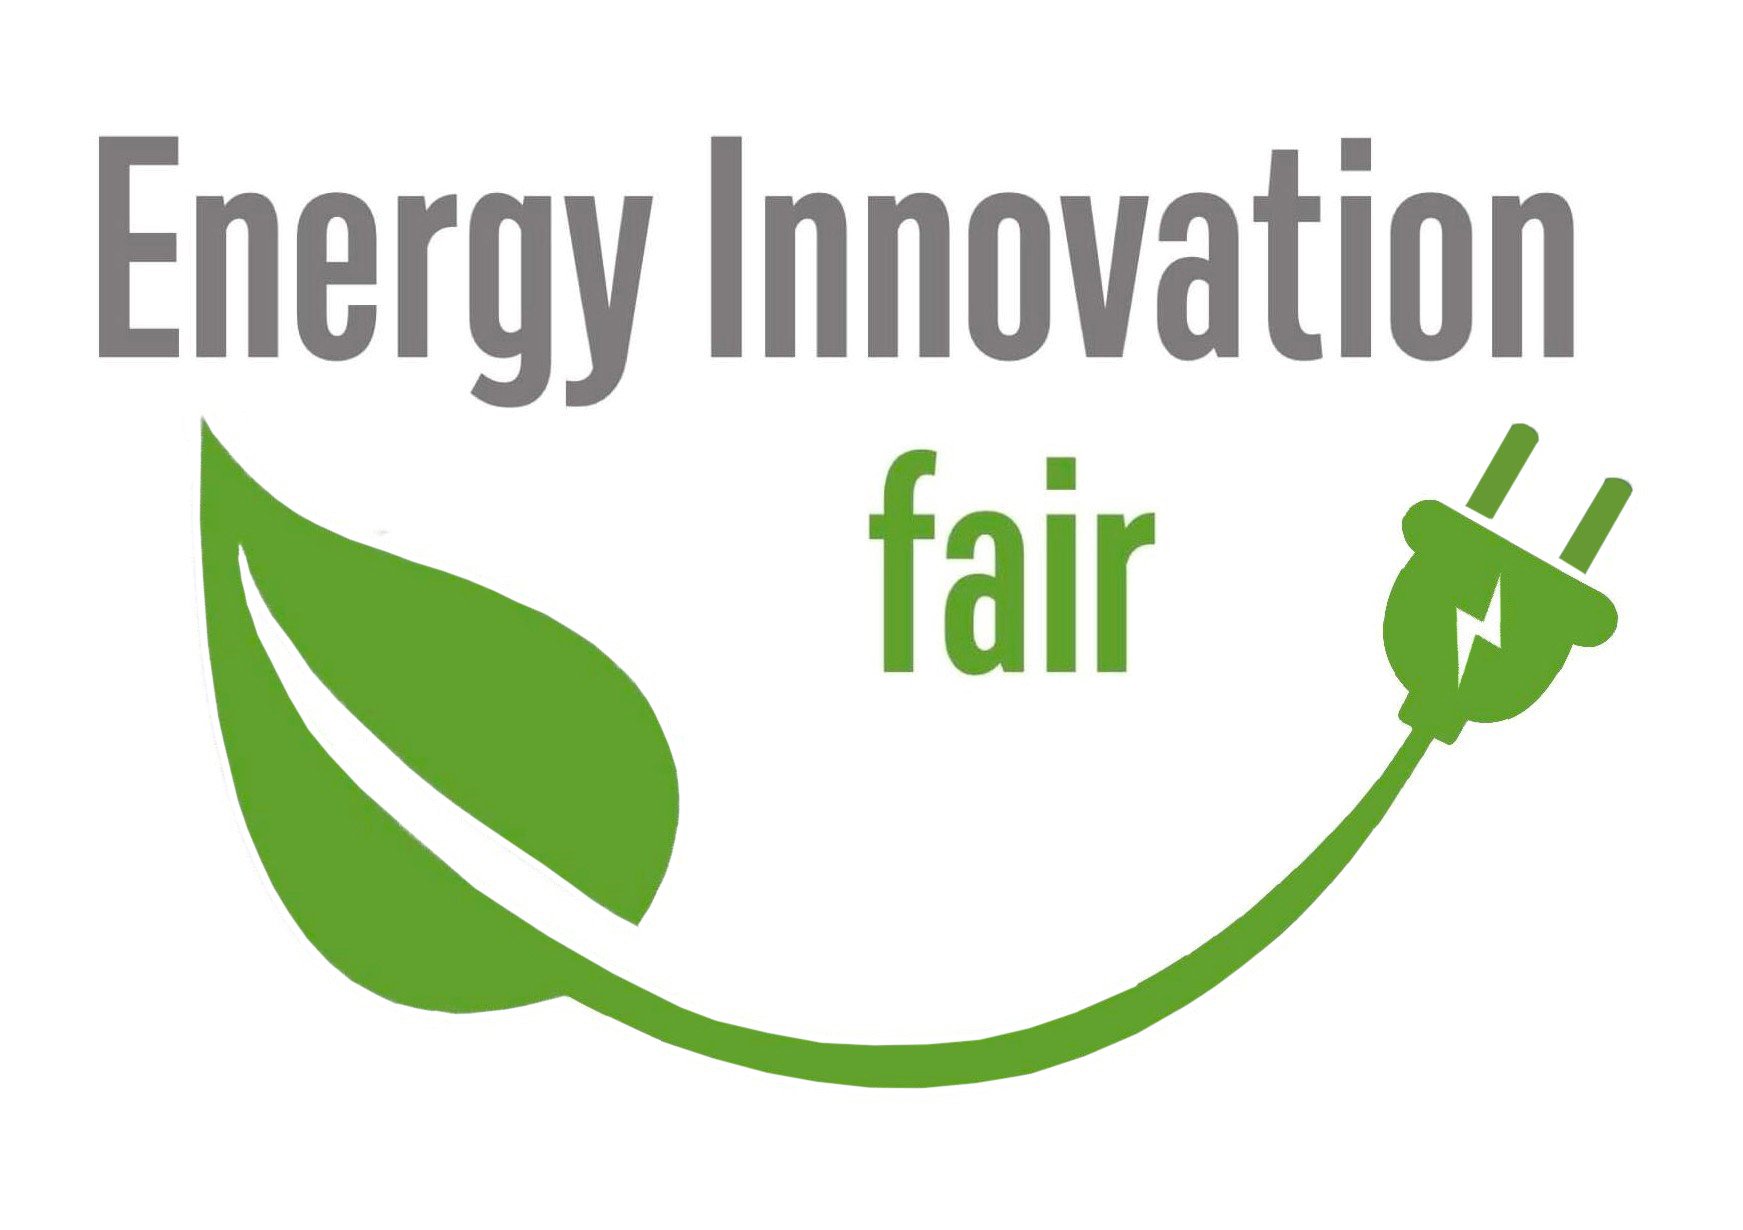 Energy Innovation Fair logo